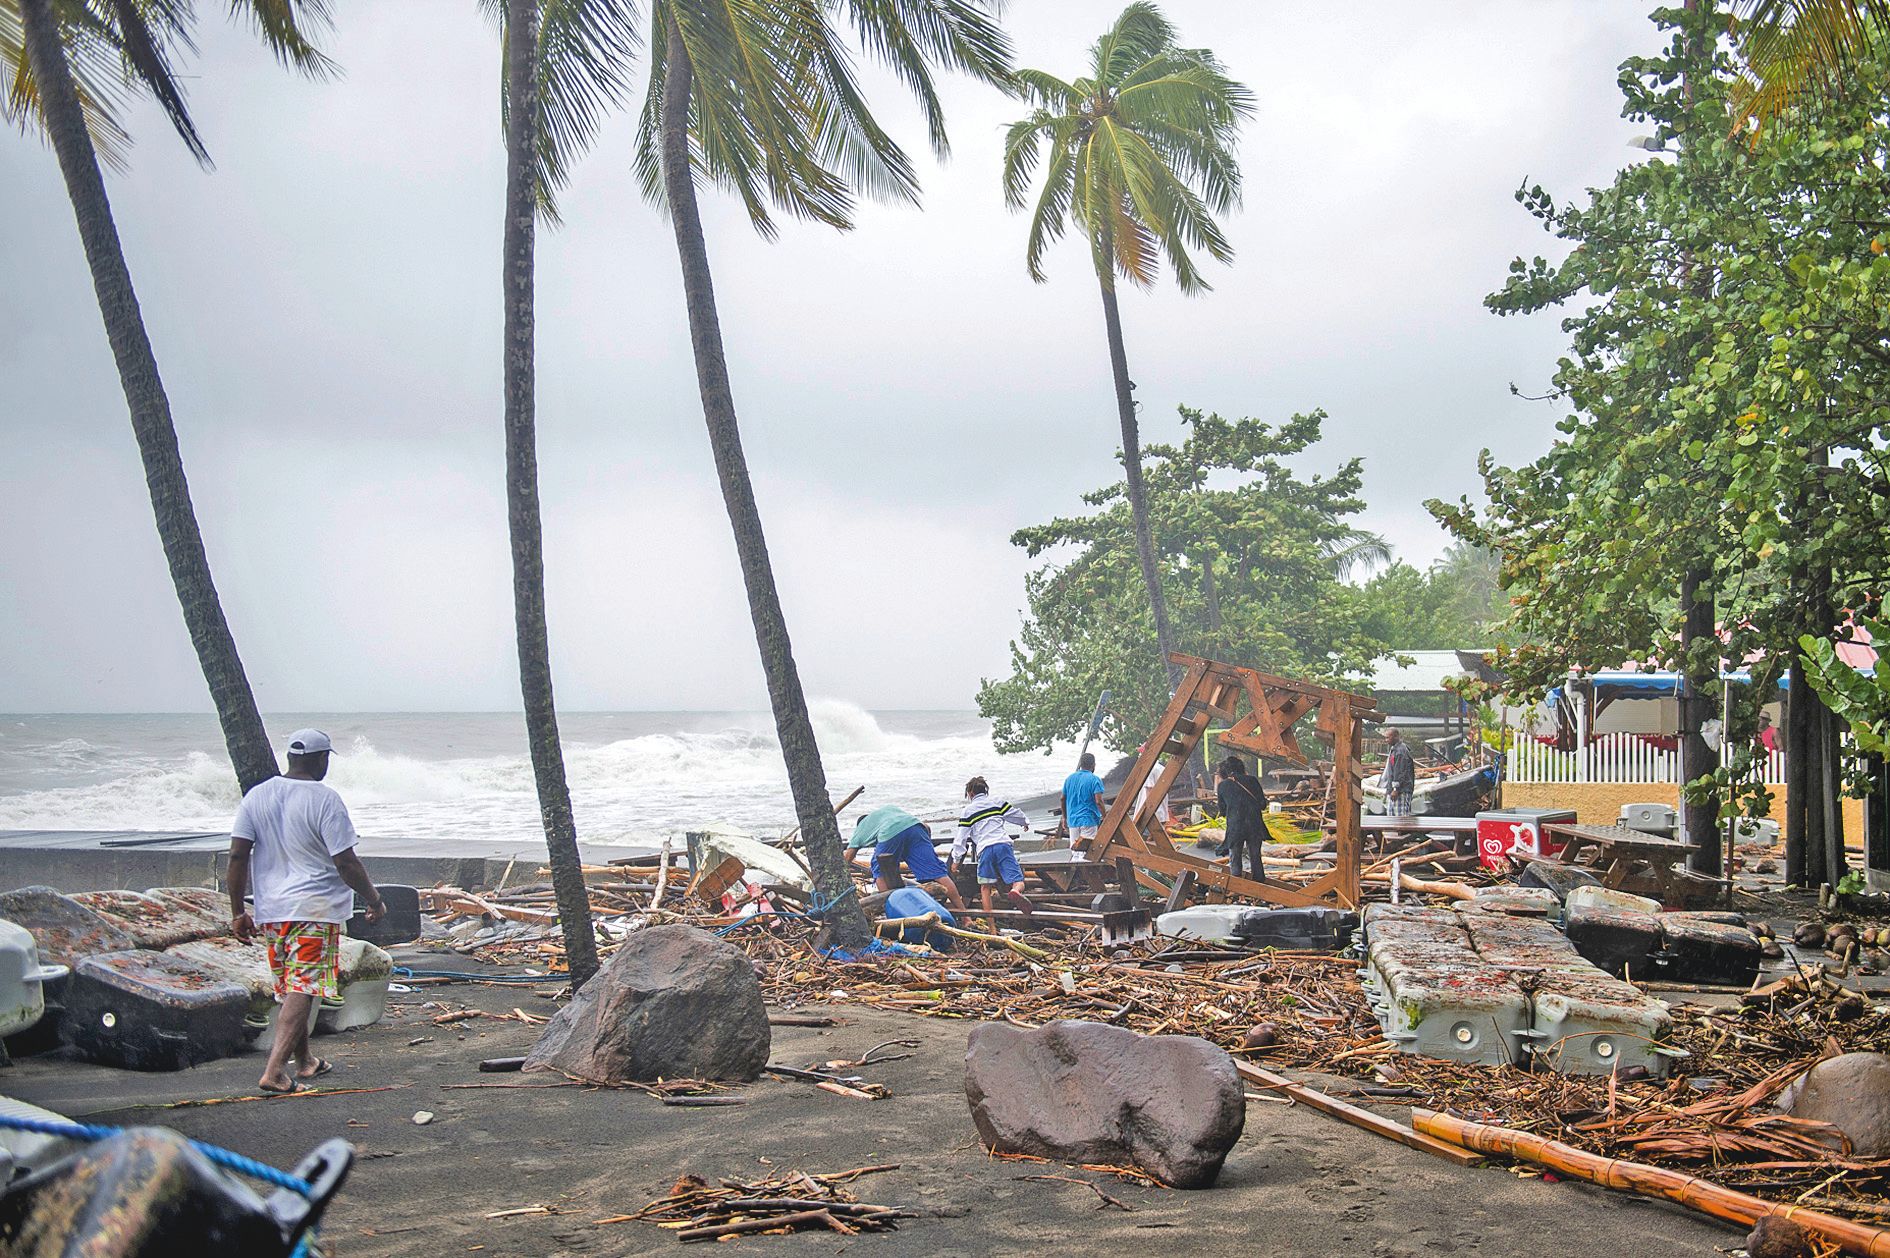 L’ouragan Maria semble avoir fait beaucoup plus de dégâts en Guadeloupe qu’en Martinique. Exposées à la houle, beaucoup d’habitations de bord de mers ont été détruites.